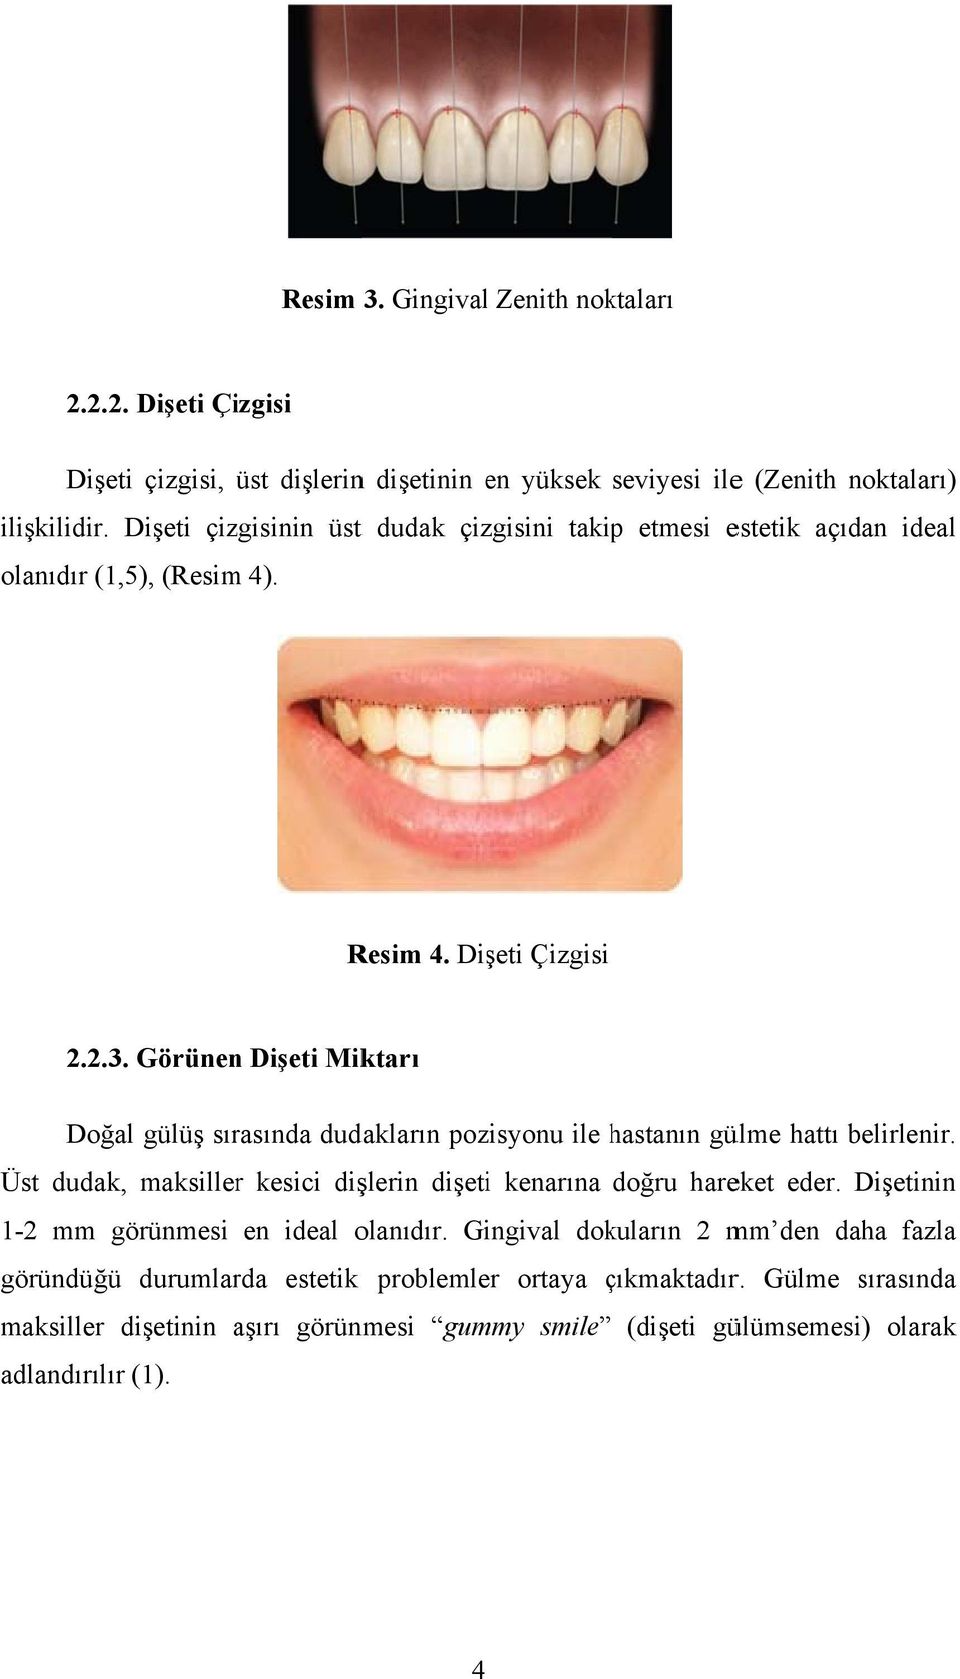 Görünenn Dişeti Miktarı Doğal gülüş sırasında dudakların pozisyonu ile hastanın h gülme hattı belirlenir. Üst dudak, maksillerr kesici dişlerin dişetii kenarına doğru hareket eder.